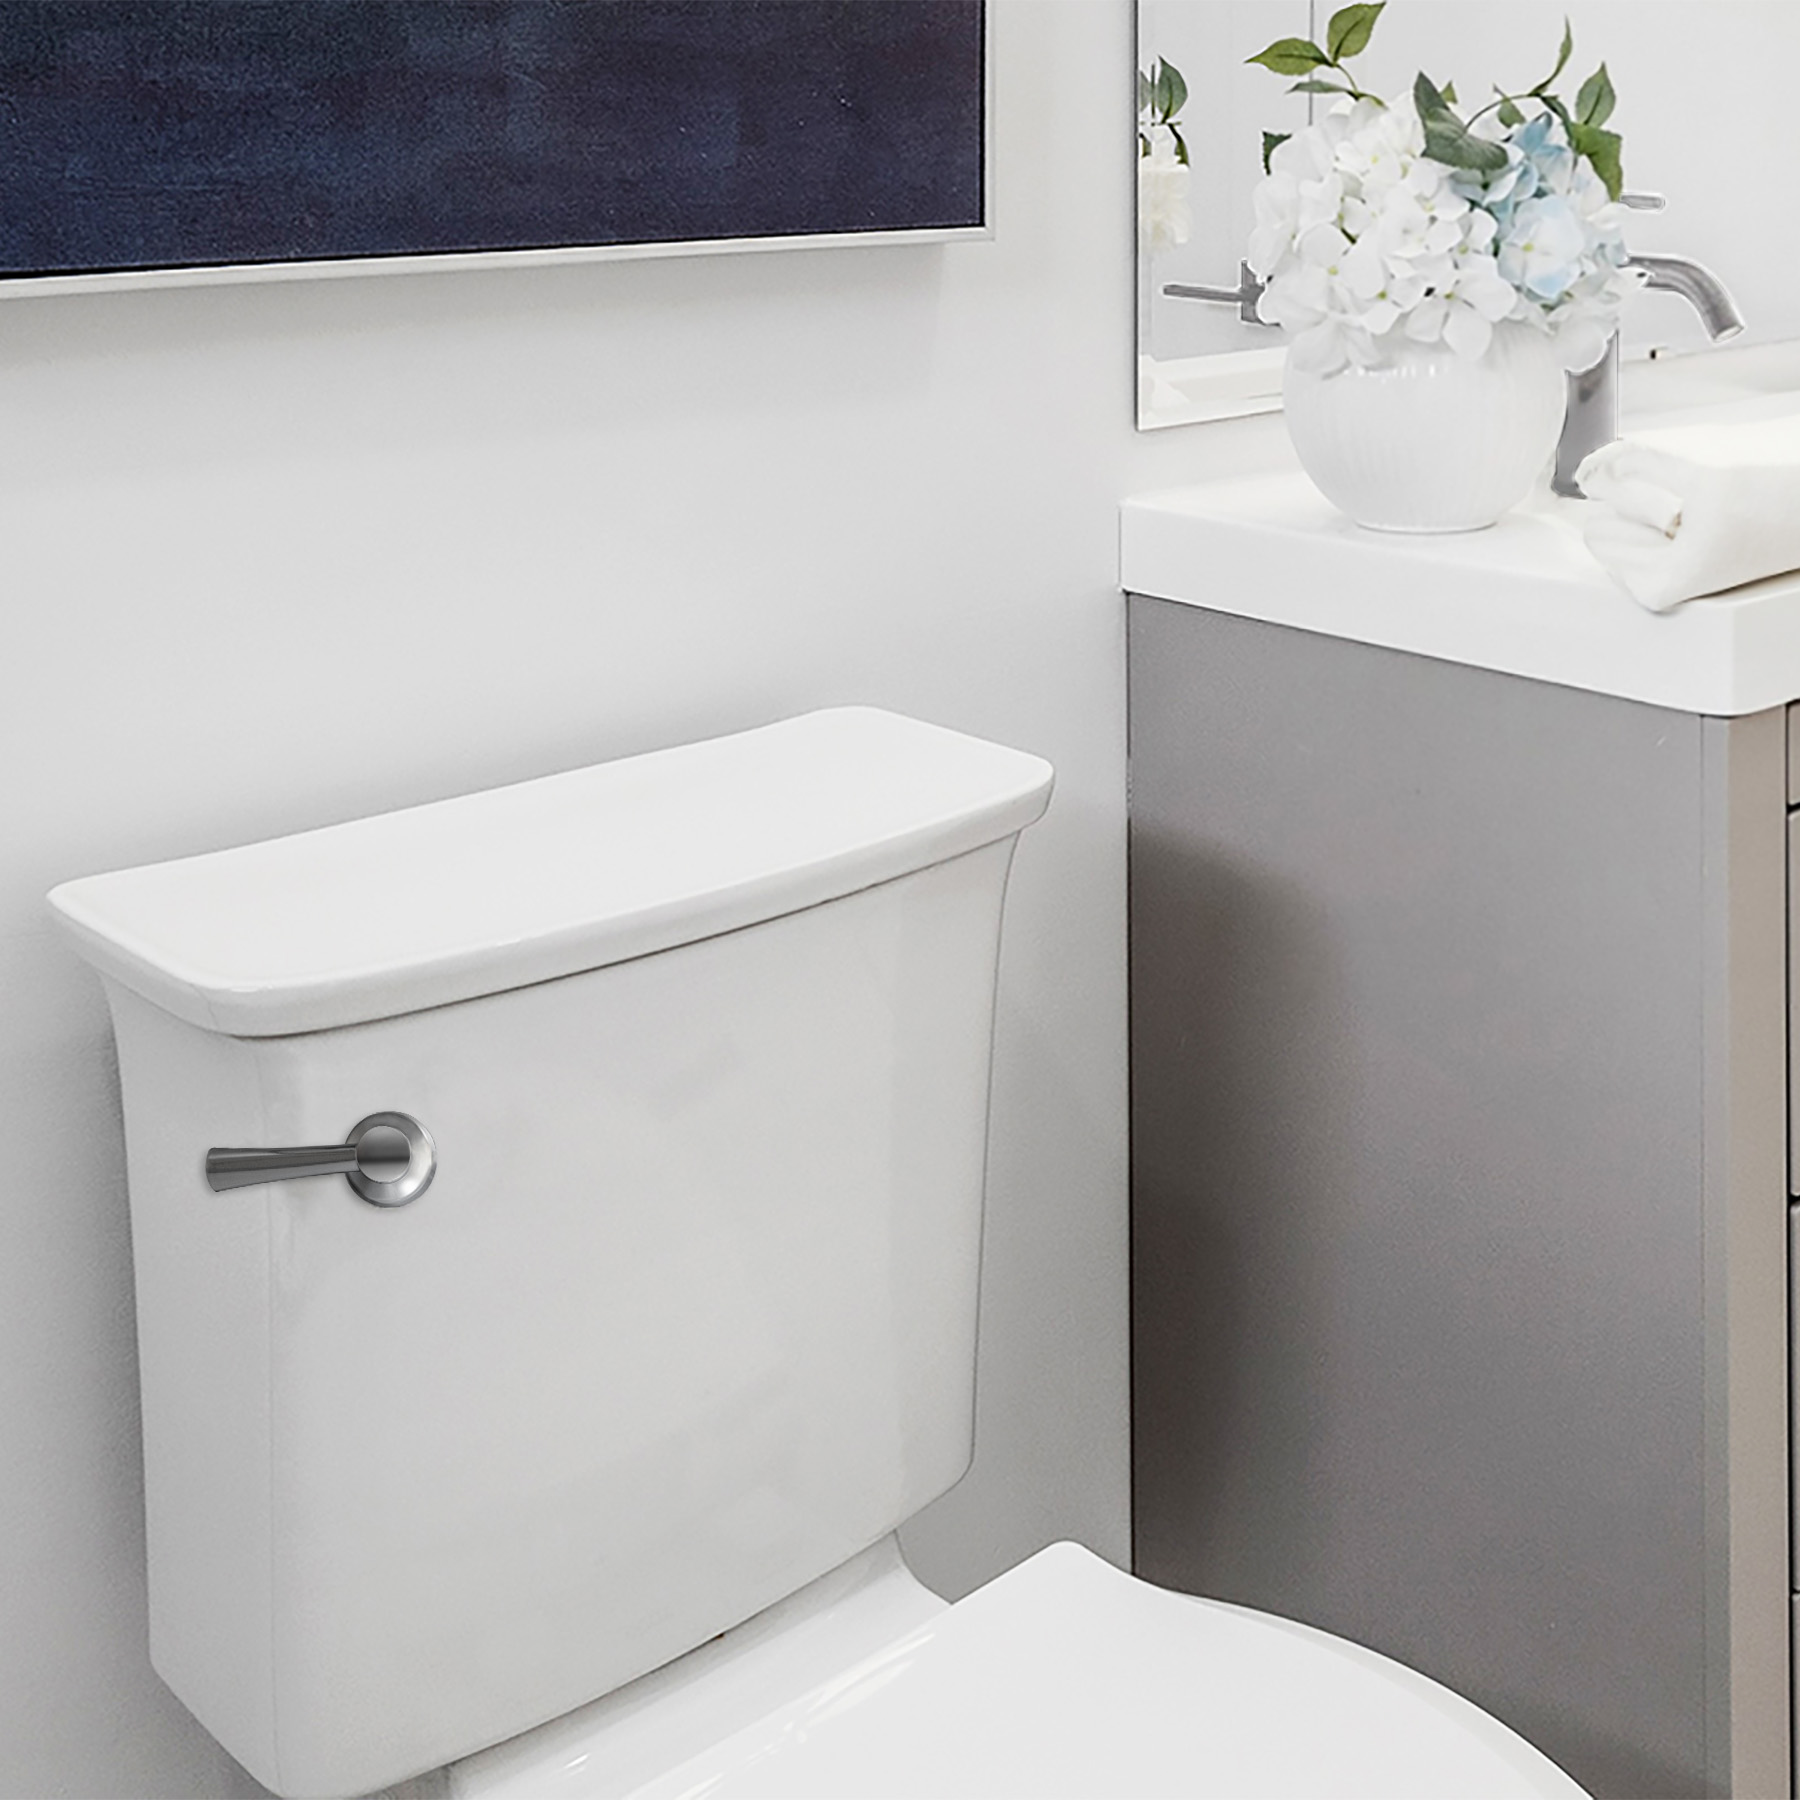 Chrome flush handle shown in full bathroom